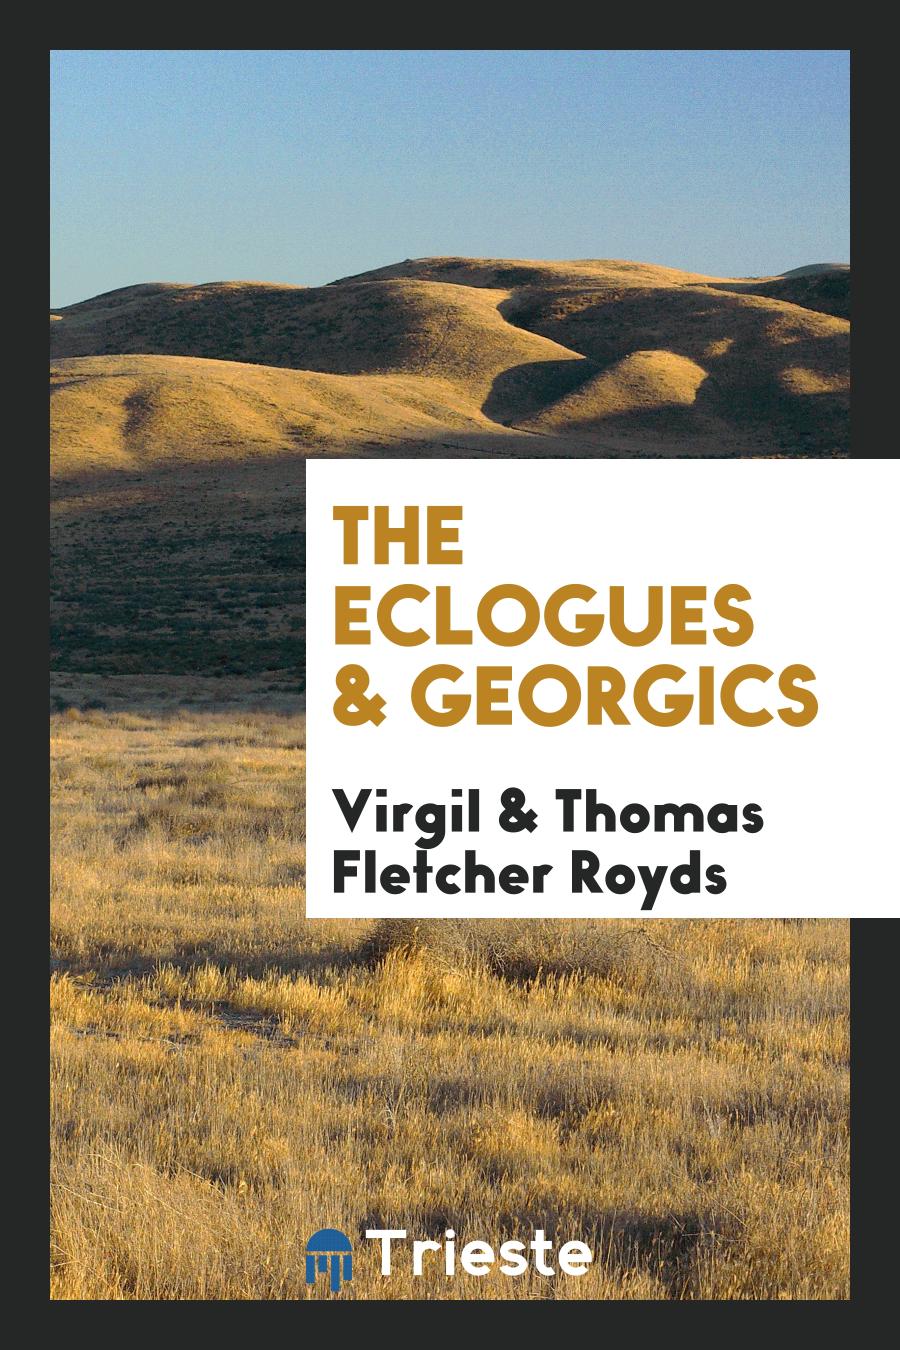 The eclogues & Georgics